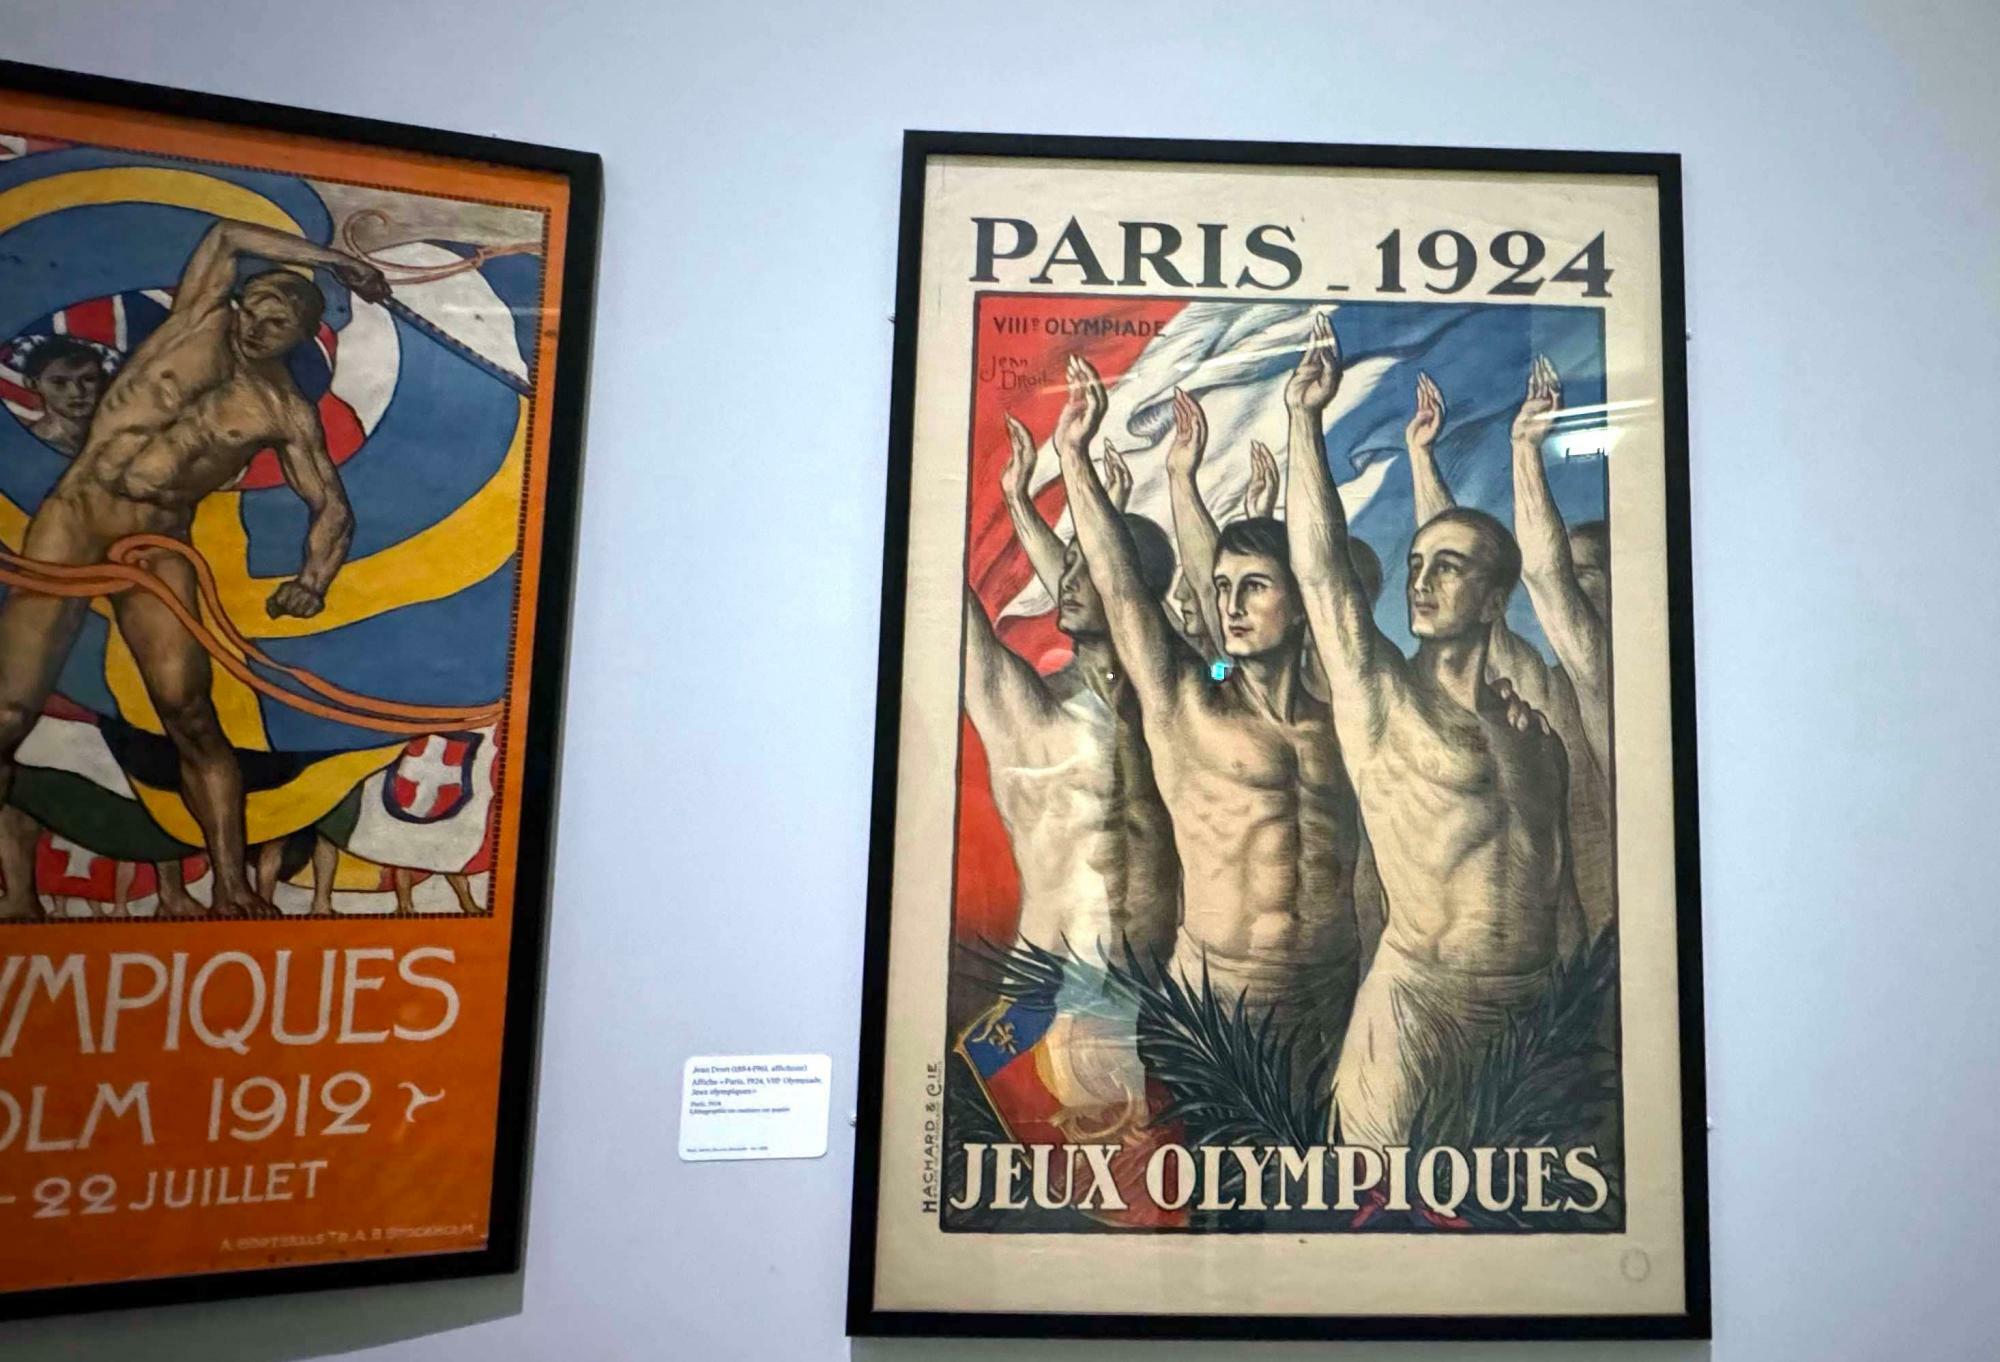 展覧会場の最初のコーナーには、1924年パリオリンピックのポスターが飾られている